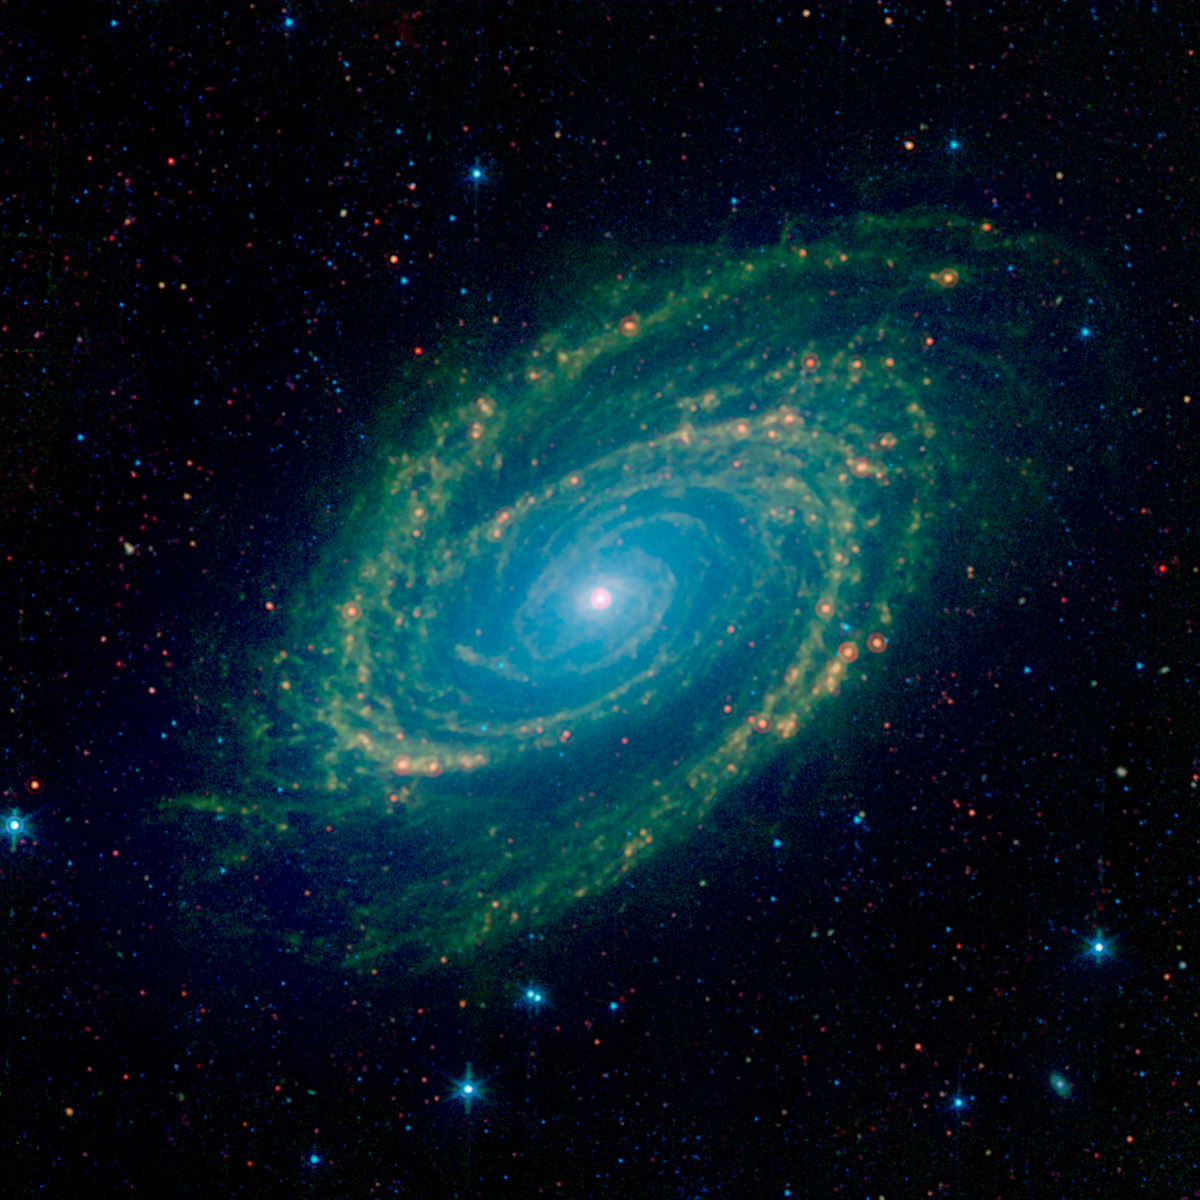 スピッツァー宇宙望遠鏡がとらえた渦巻銀河m81 アストロピクス